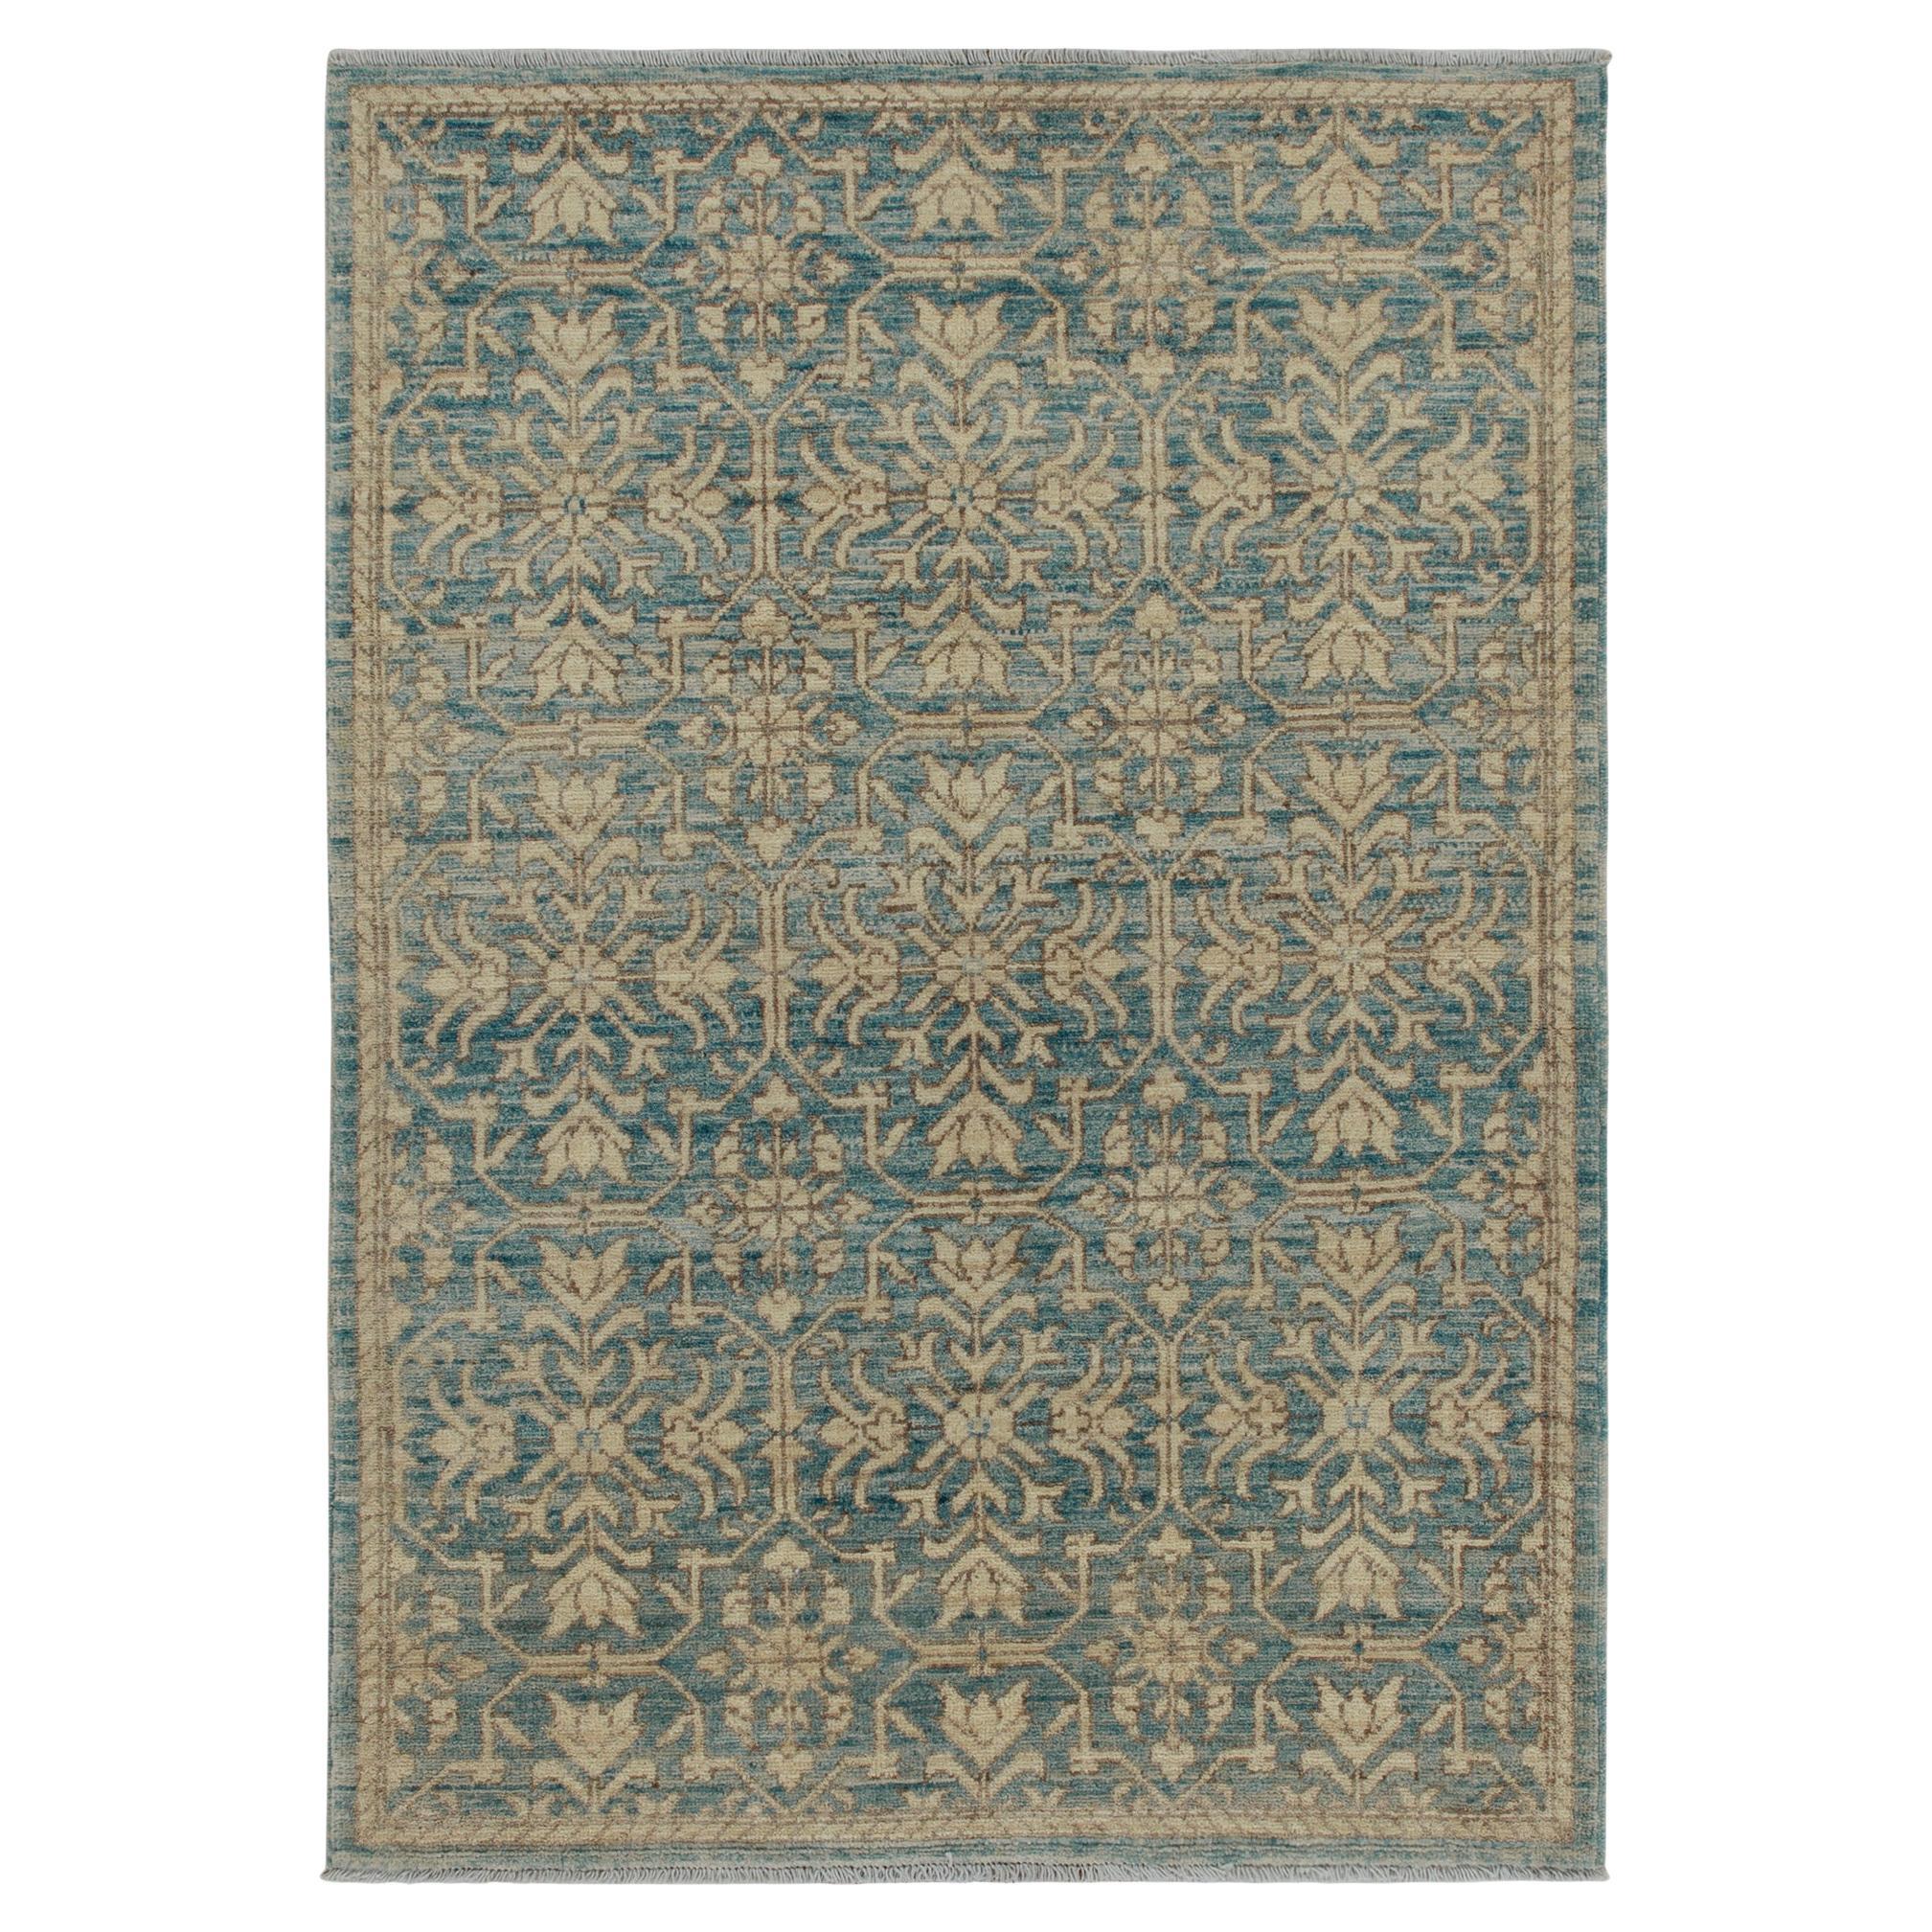 Rug & Kilim's Contemporary Teppich in Blau mit braun-beigefarbenen Blumenmustern